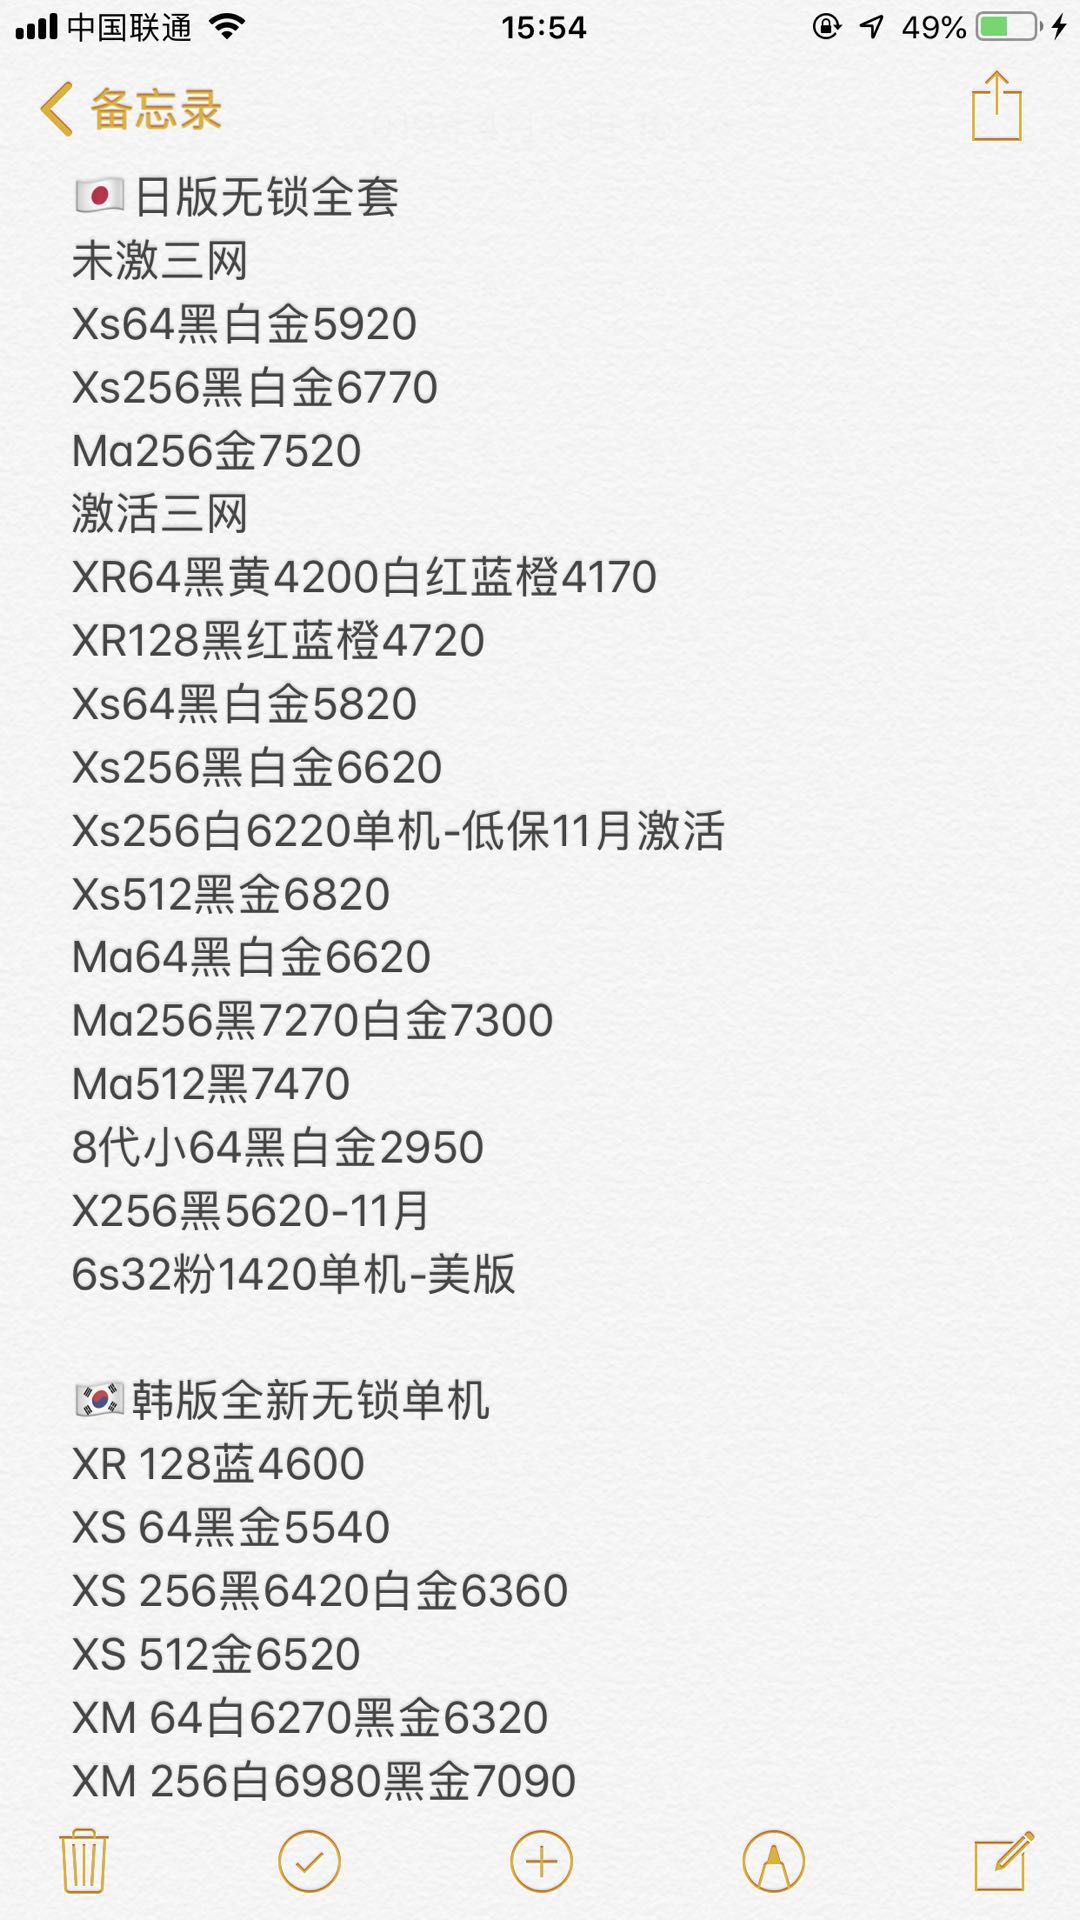 日版 美版 韩版 无锁全套苹果iPhone XS XS MAX X 8 7全新报价单.jpg